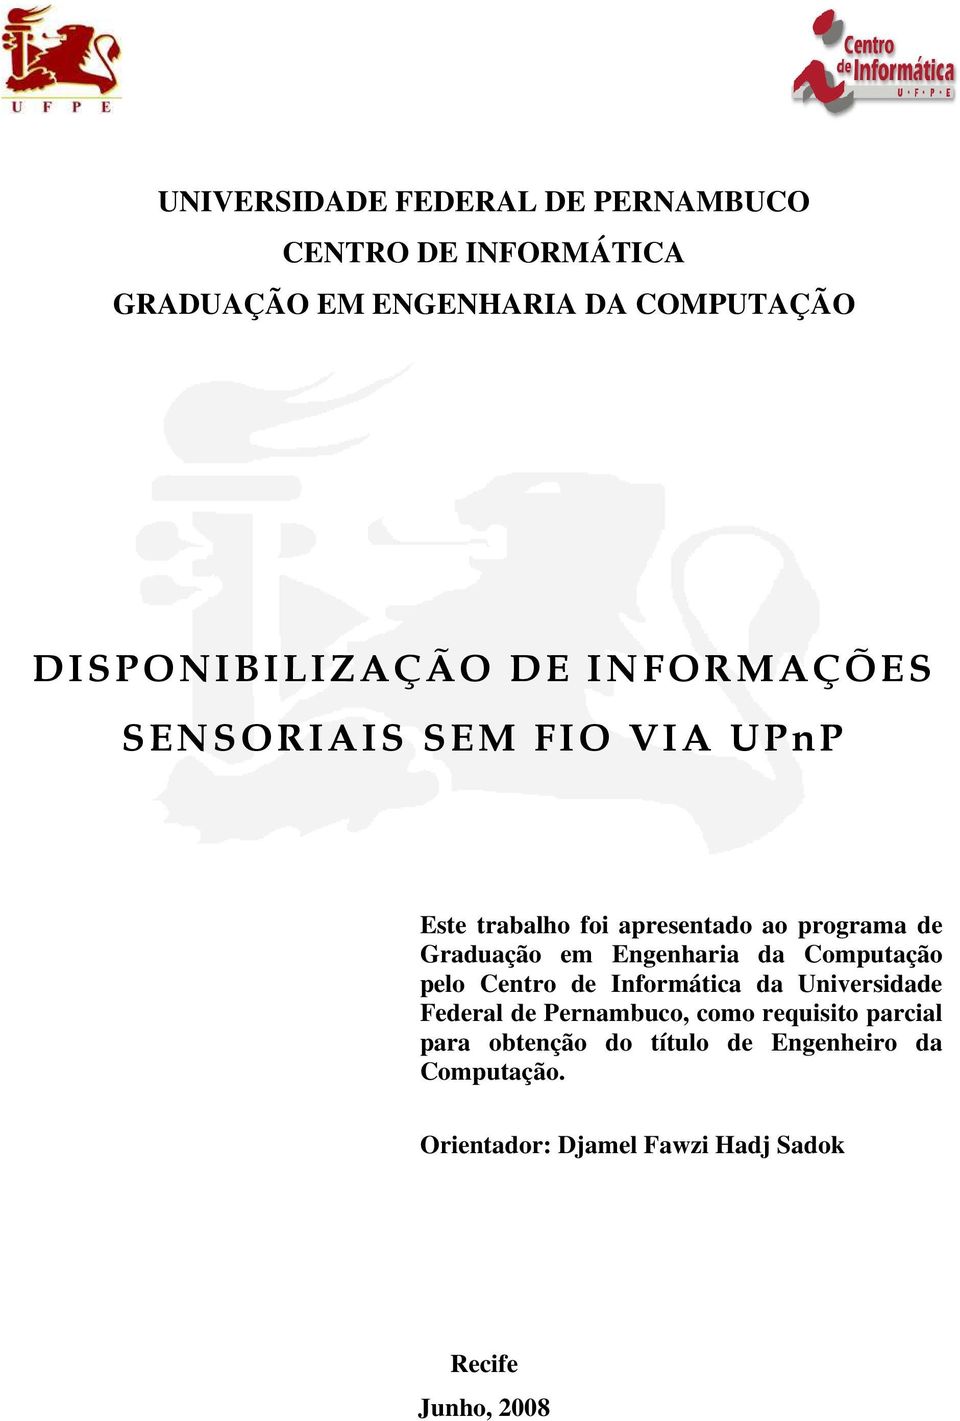 Graduação em Engenharia da Computação pelo Centro de Informática da Universidade Federal de Pernambuco, como